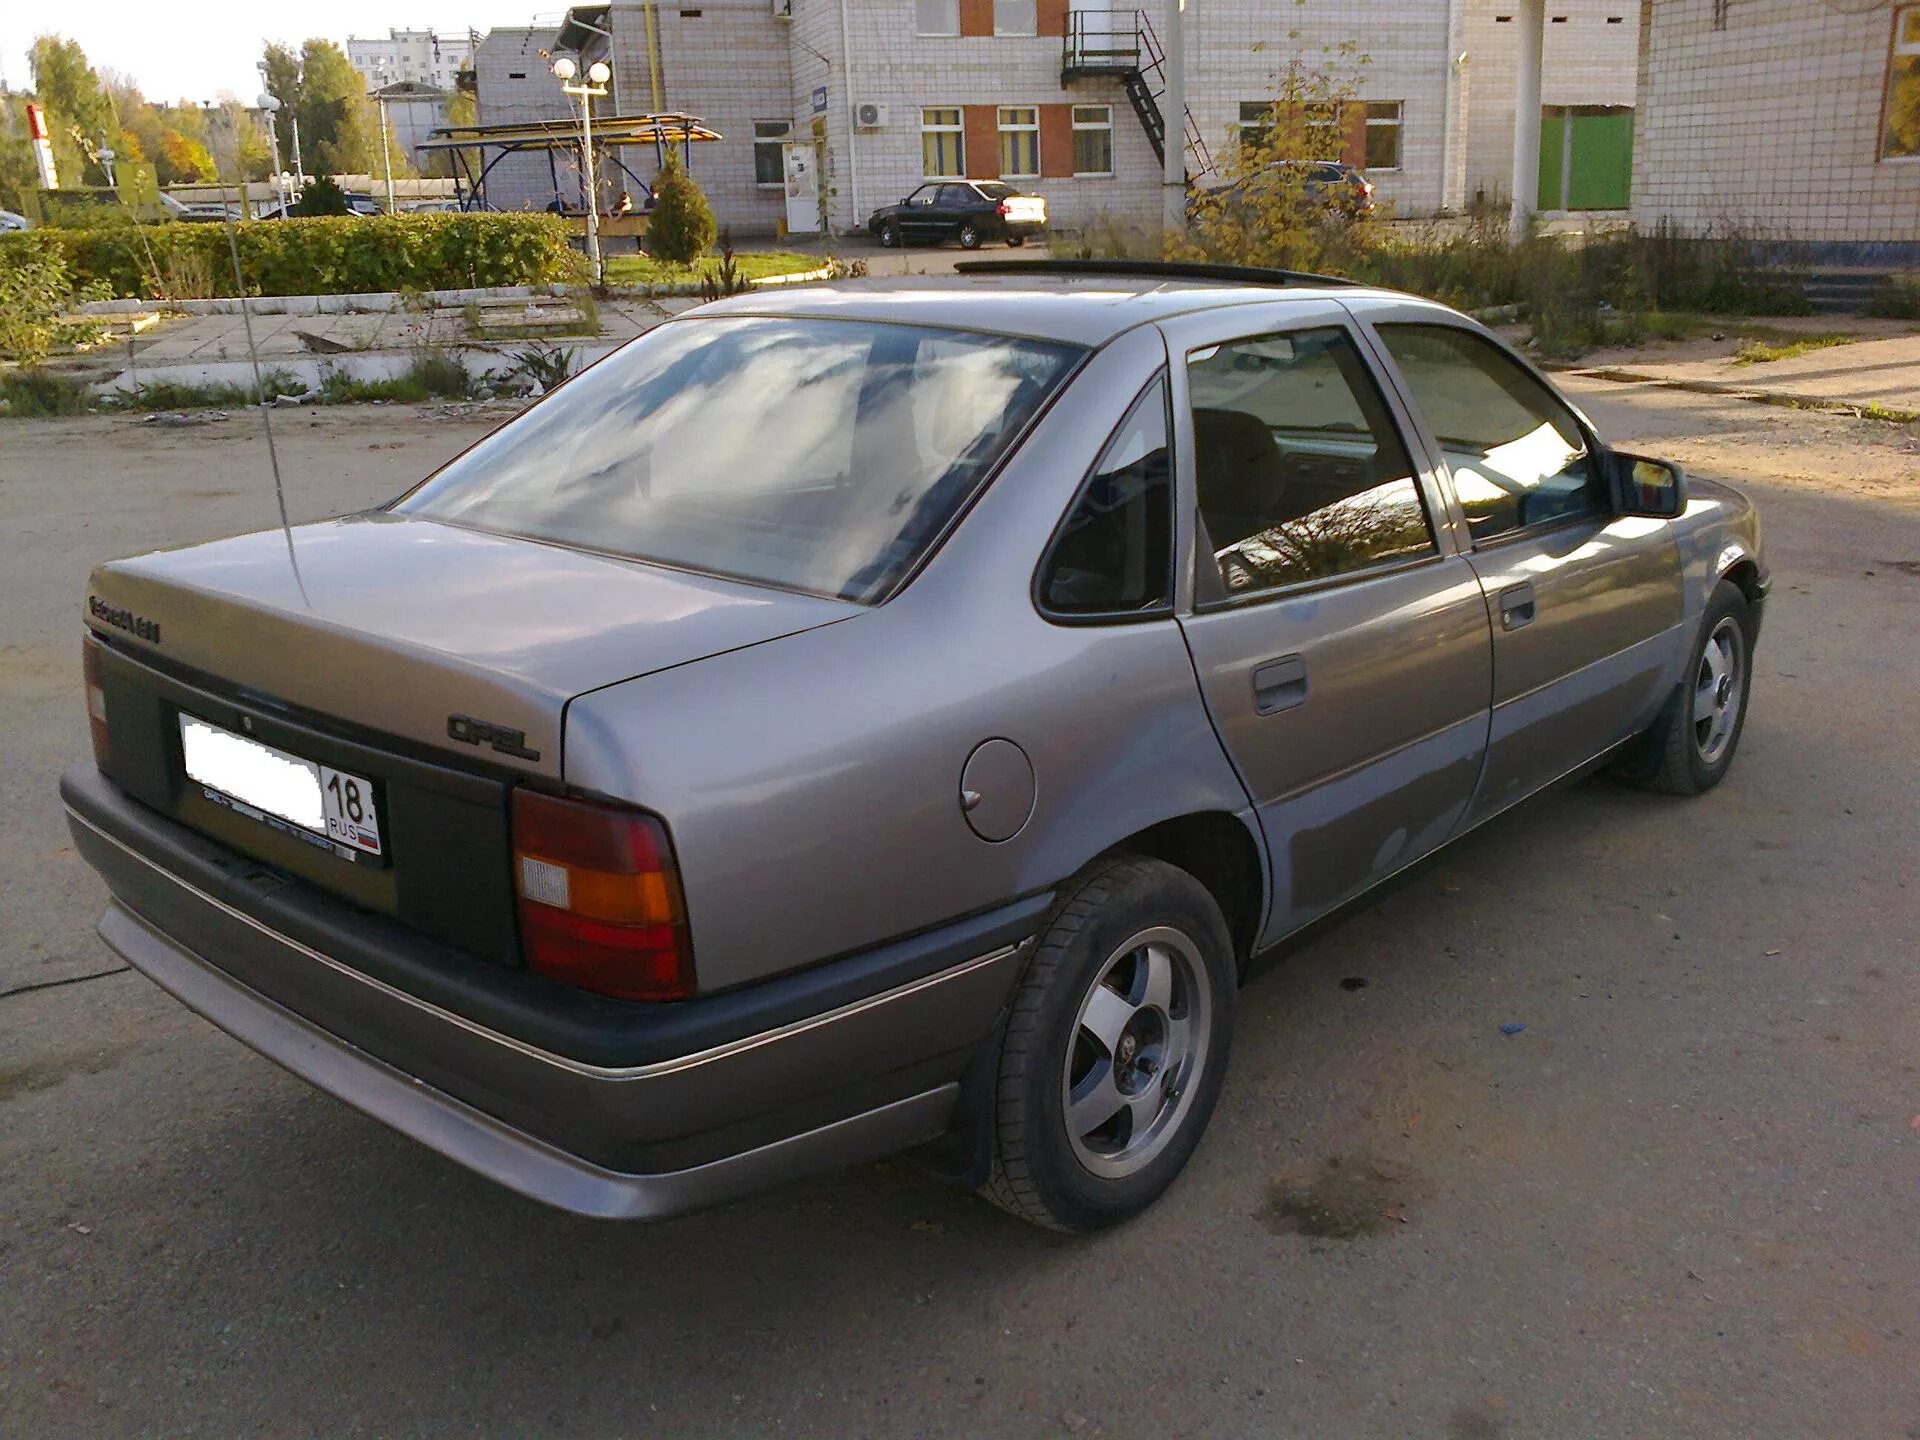 Opel Vectra 1990. Опель Вектра 1990. Опель Вектра седан 1990. Опель Вектра 1990г.